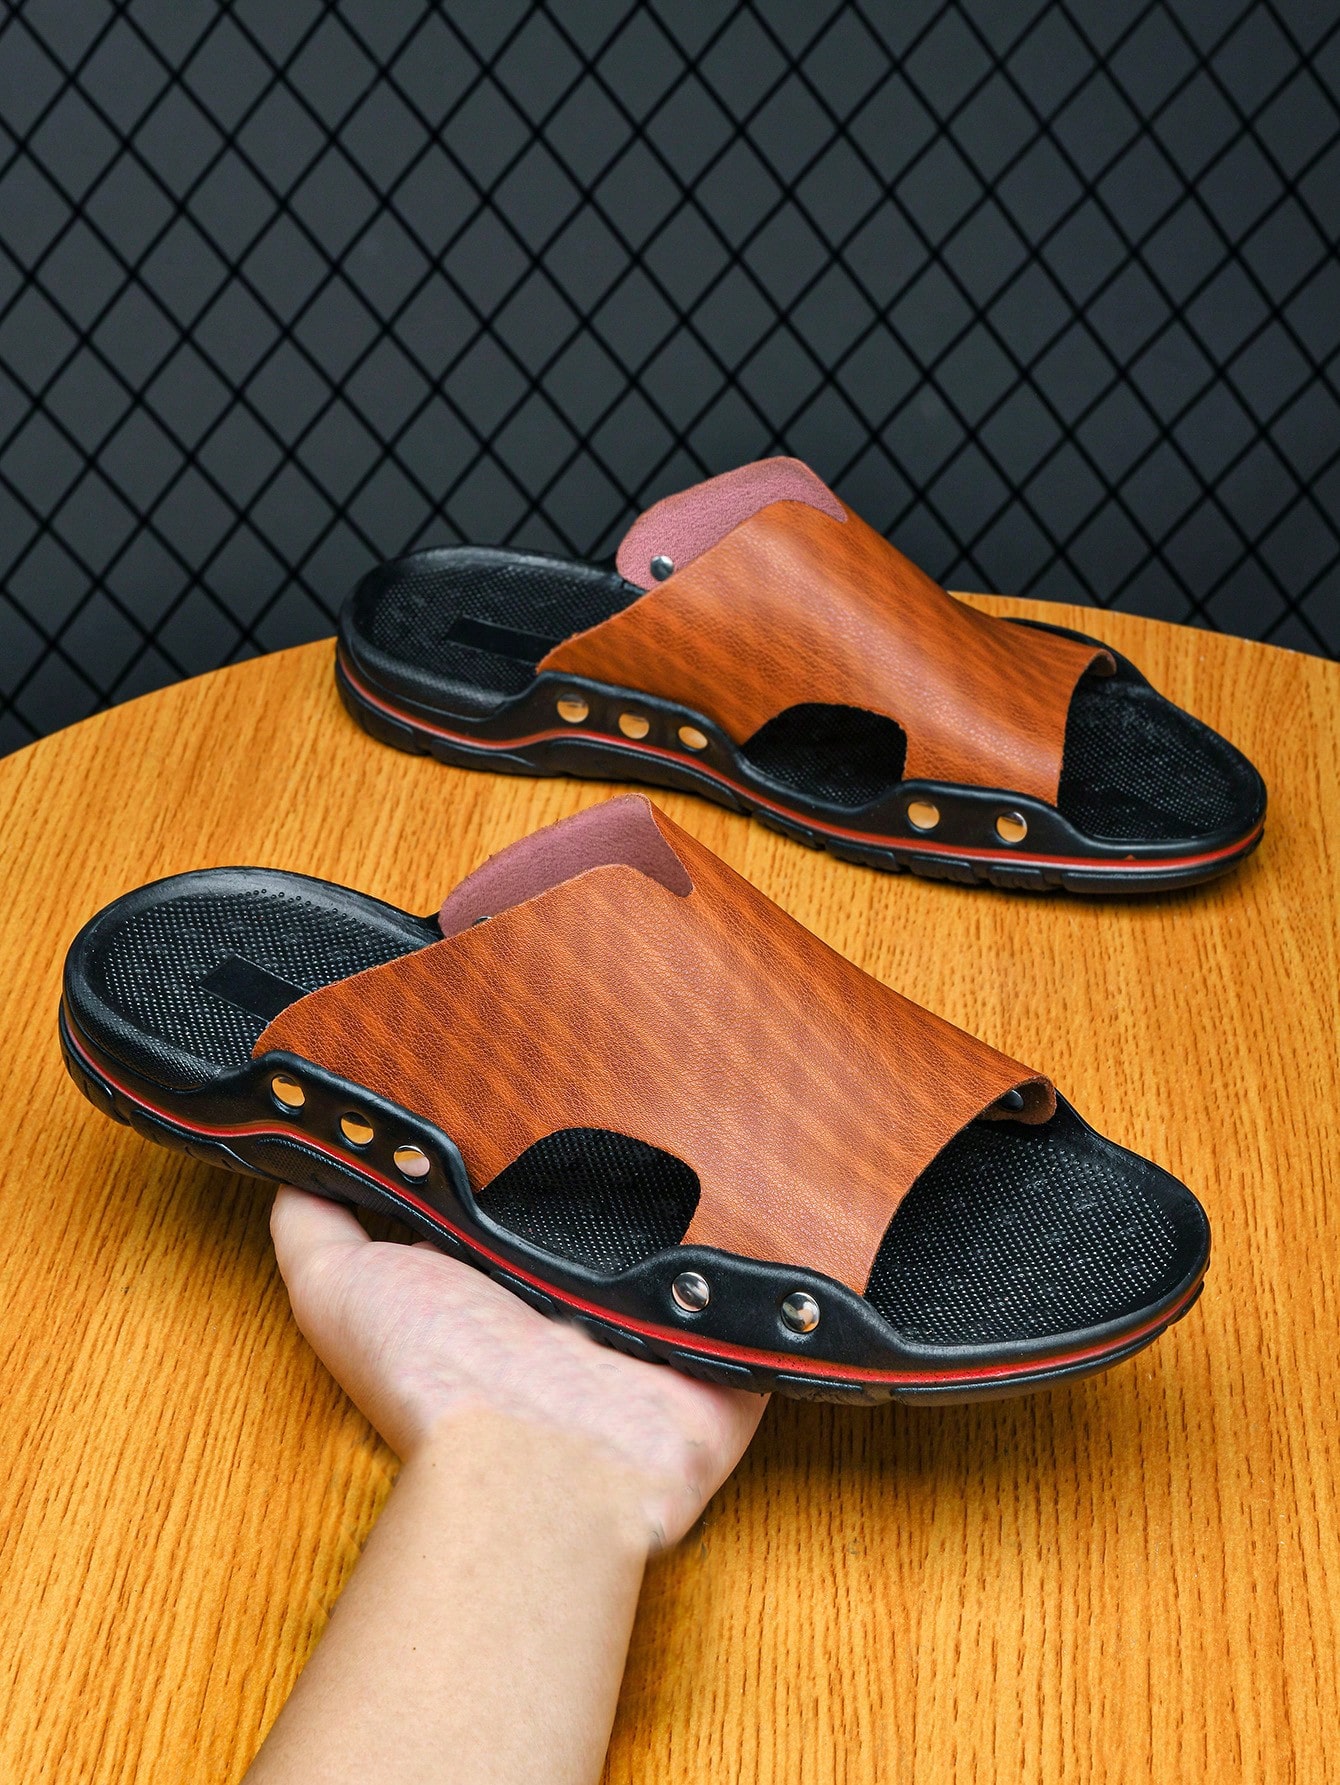 Мужские сандалии-тапочки, коричневый сандалии гладиаторы для девочек модные высокие босоножки в римском стиле пляжная обувь для начинающих ходить детей лето